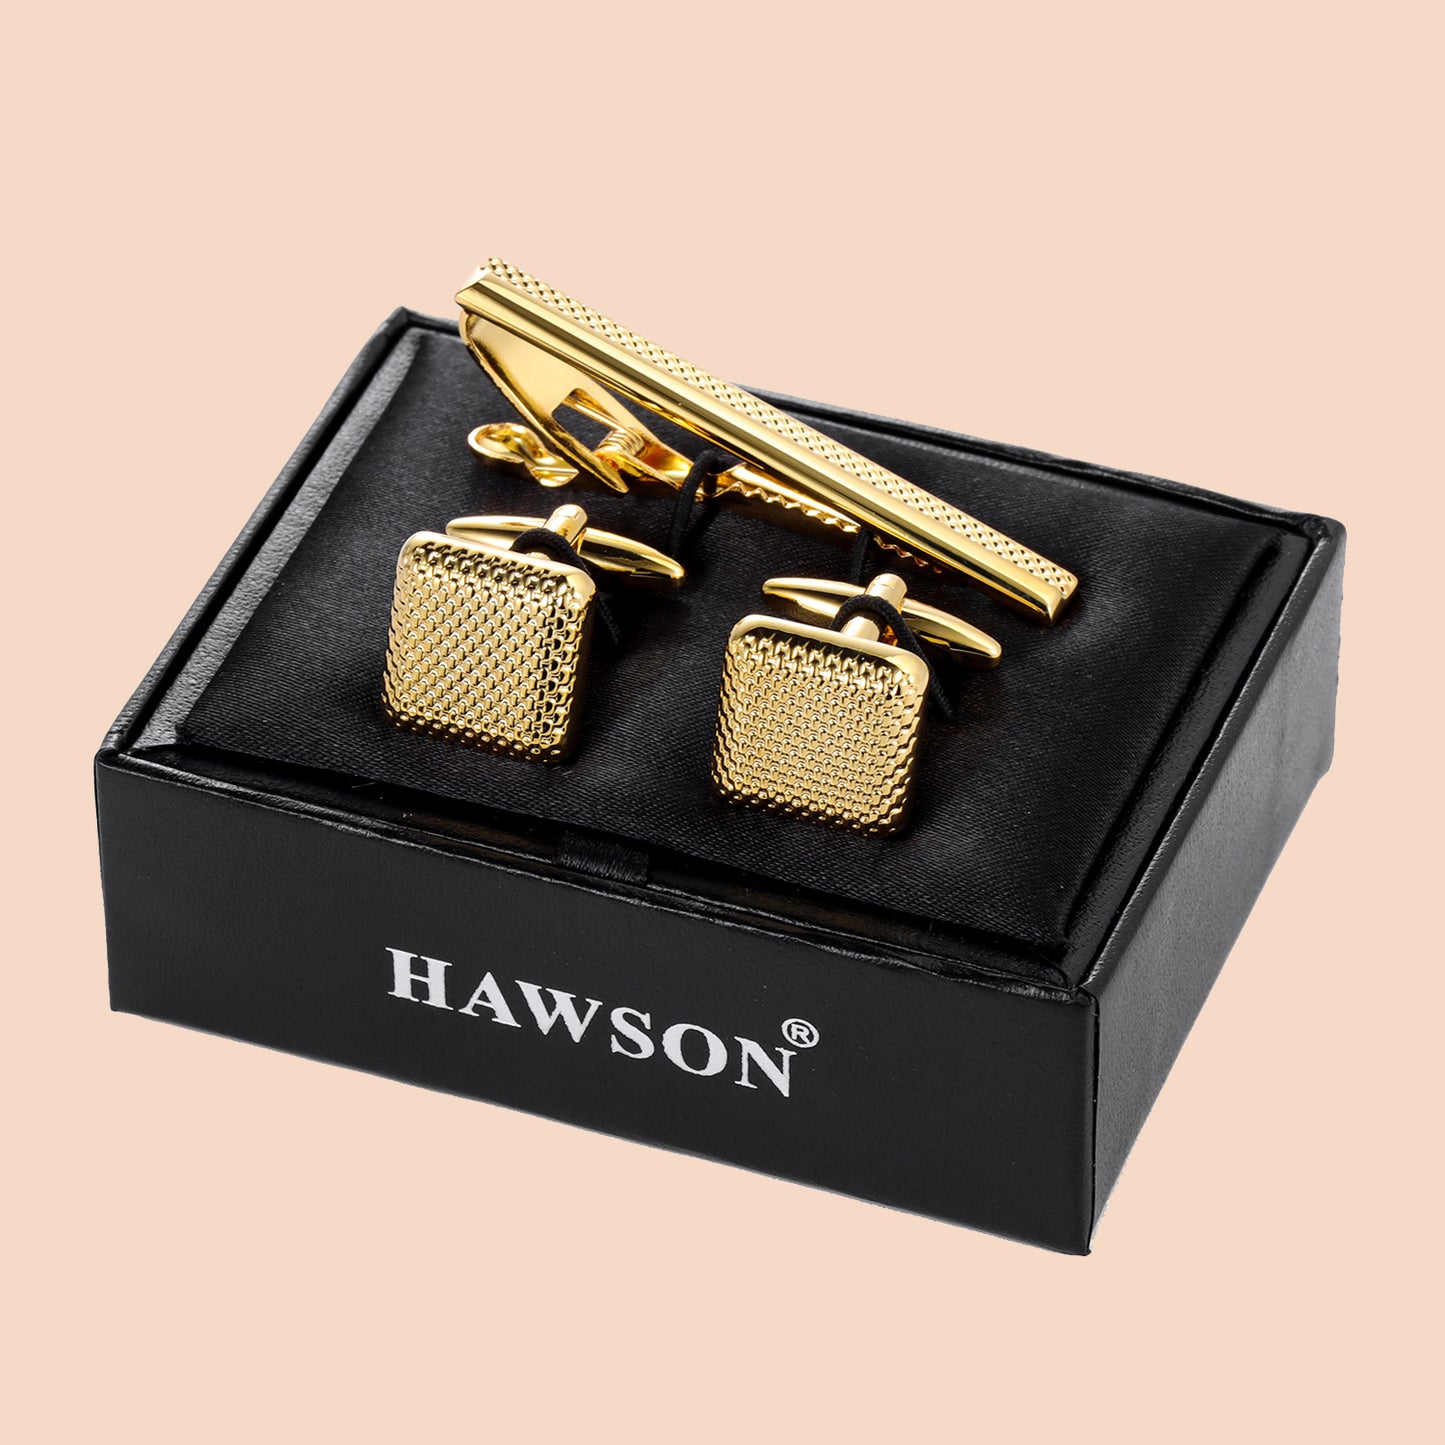 HAWSON Metal Cufflinks and Tie Clip for Men